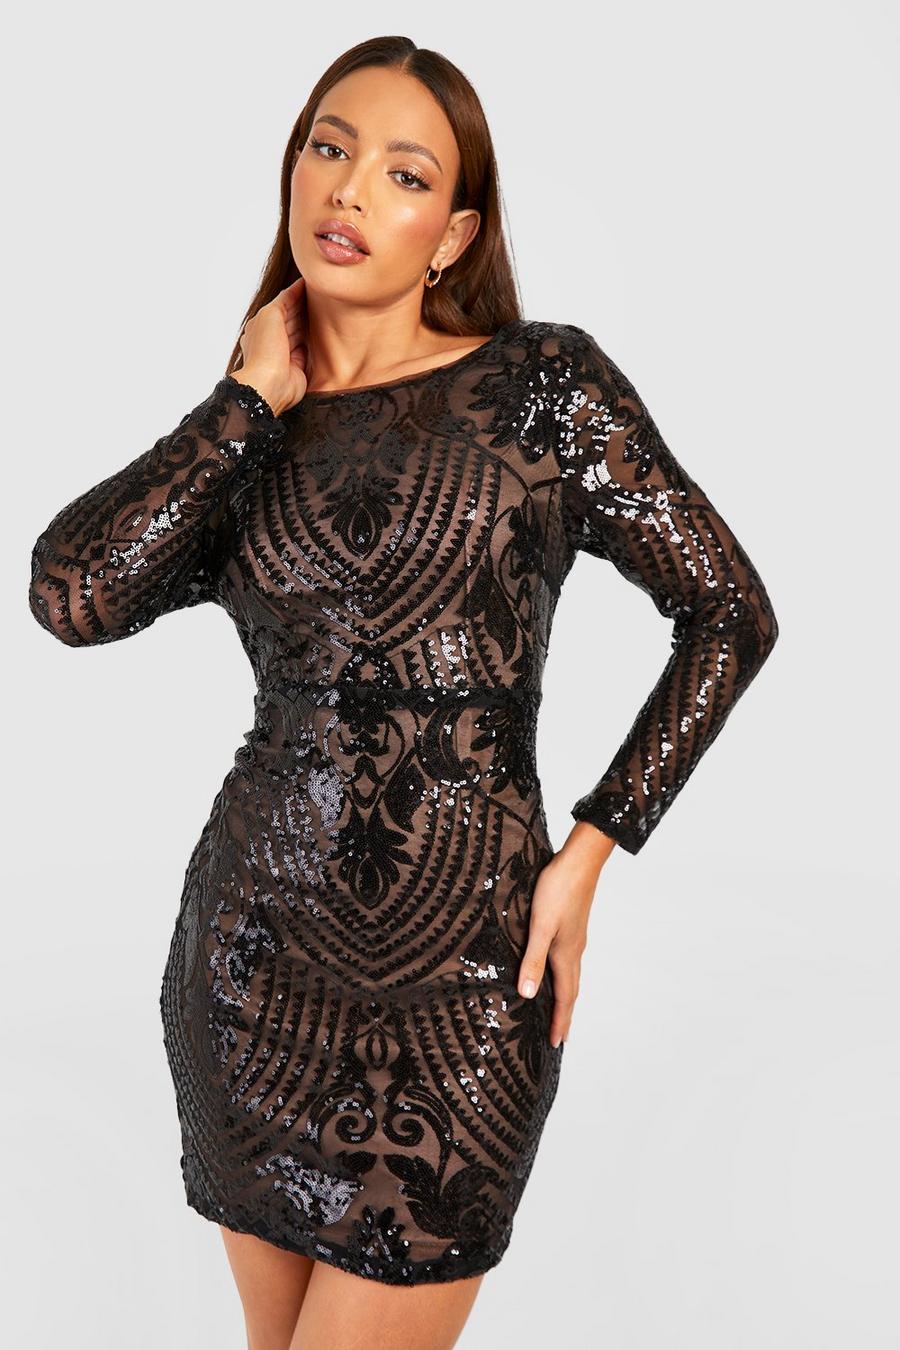 שחור שמלת מיני מבד דמשק עם פייטים ומחשוף גב נשפך, לנשים גבוהות image number 1